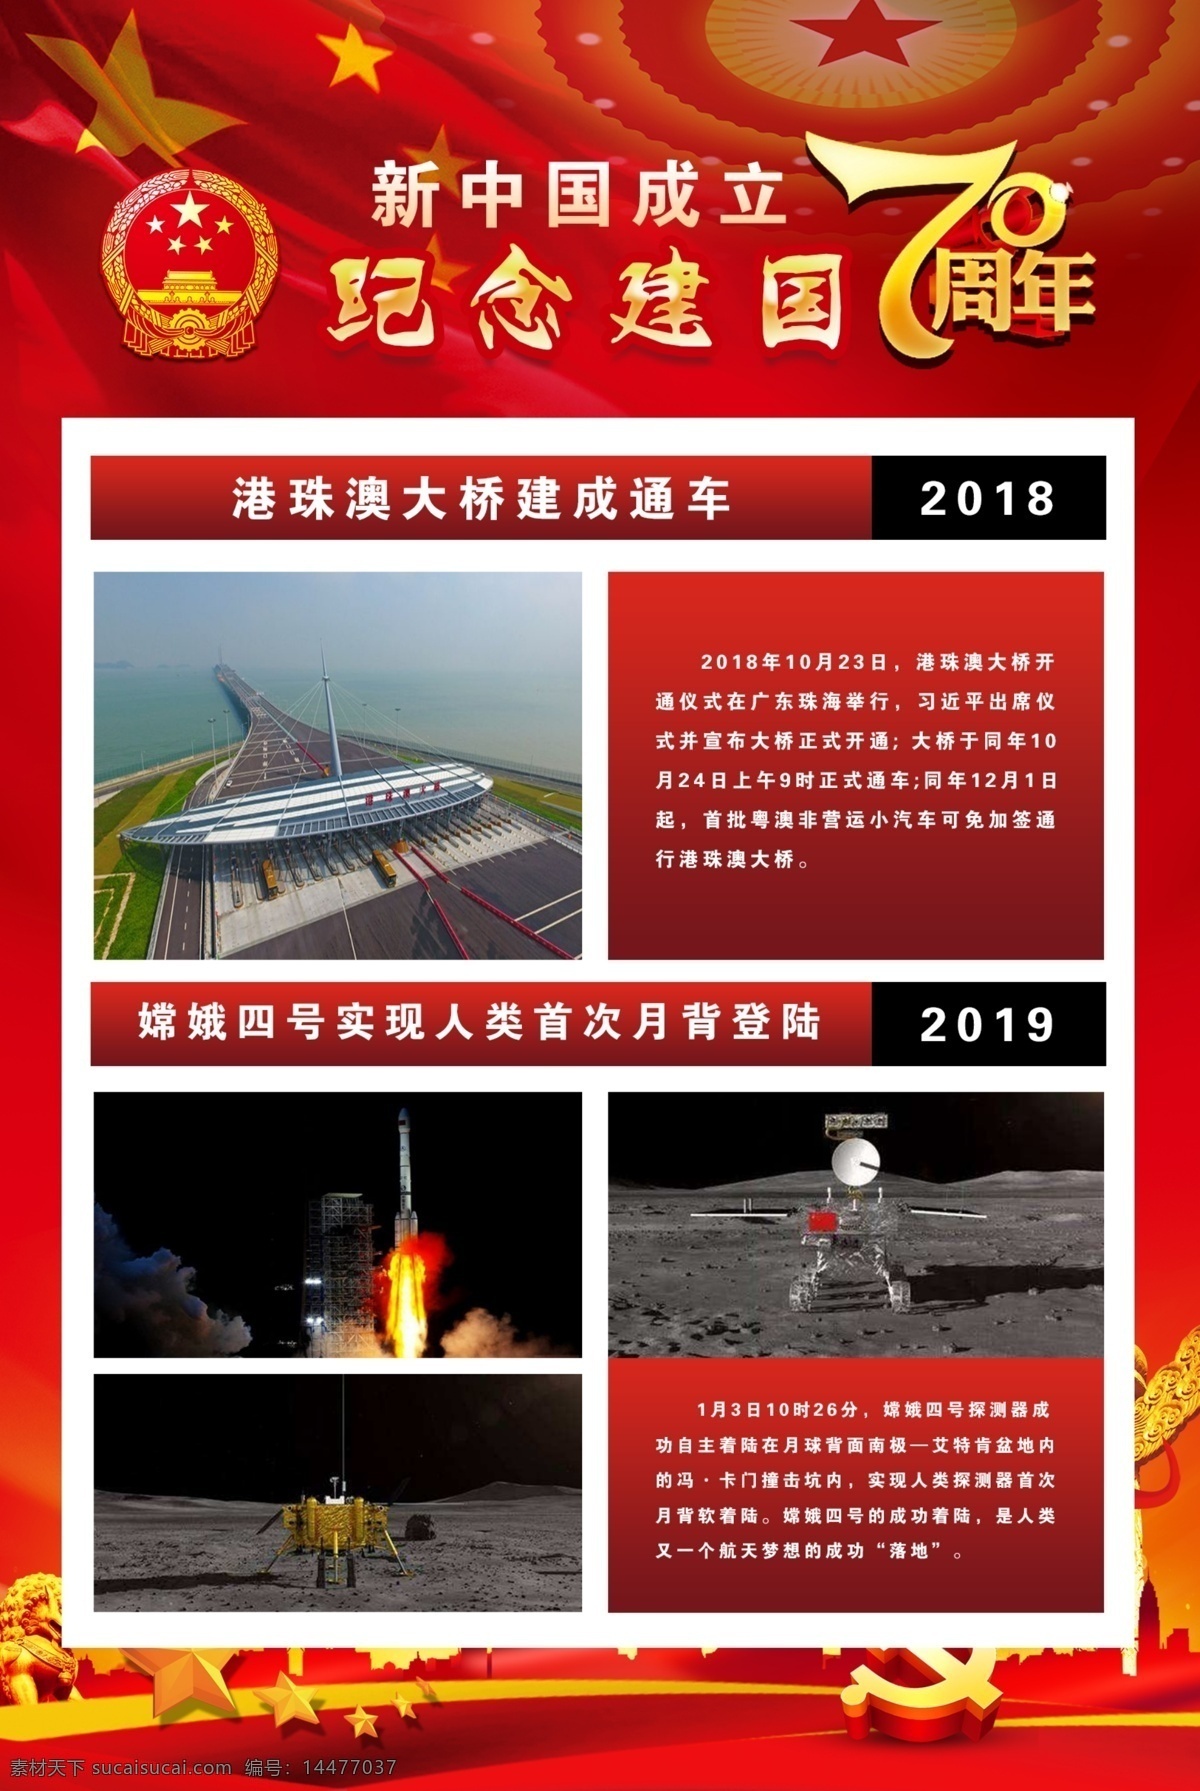 新中国 成立 周年 成立70周年 红色背景 纪念建国 70周年 18年 19年 文化艺术 传统文化